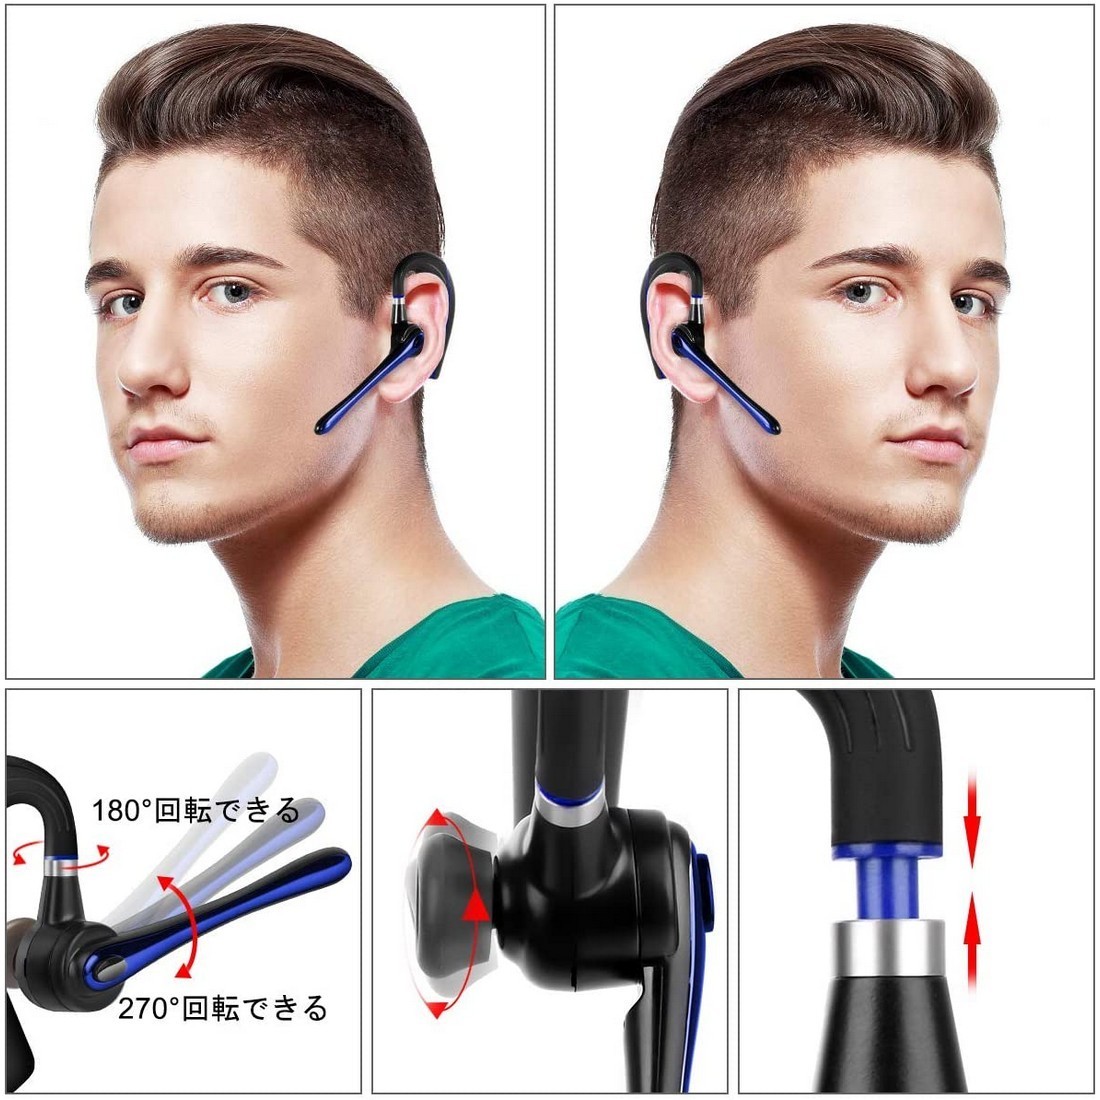 Bluetooth ヘッドセット5.0 高音質片耳 内蔵マイクBluetoothイヤホン ビジネス 快適装着 ハンズフリー通話 また日本技適マーク取得品の画像4